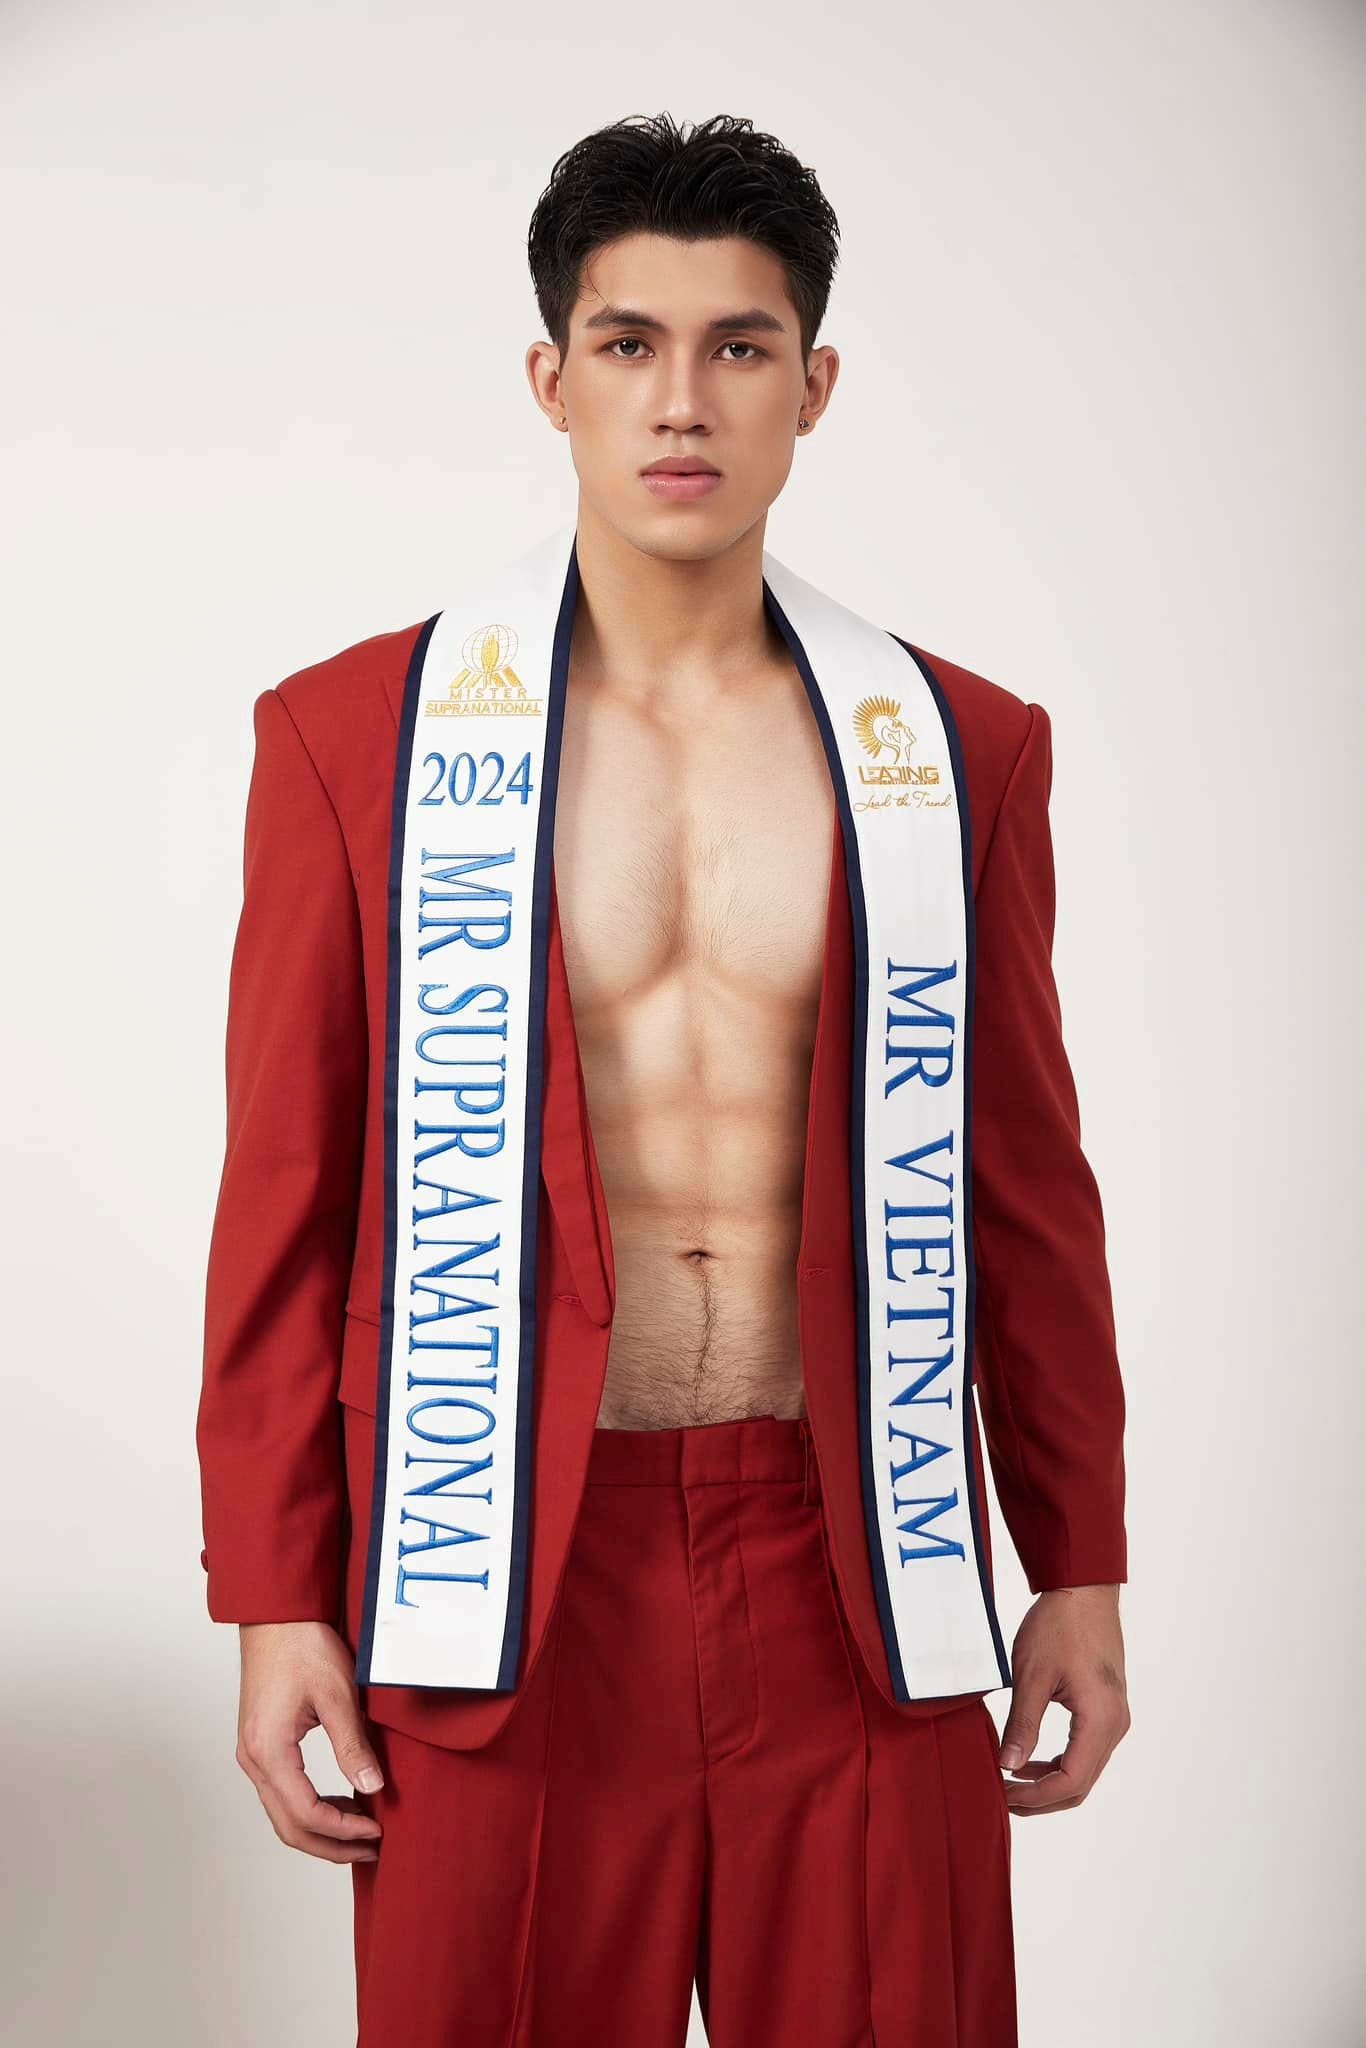 Đại diện Việt Nam tại cuộc thi Mister Supranational 2024. Ảnh: Facebook nhân vật